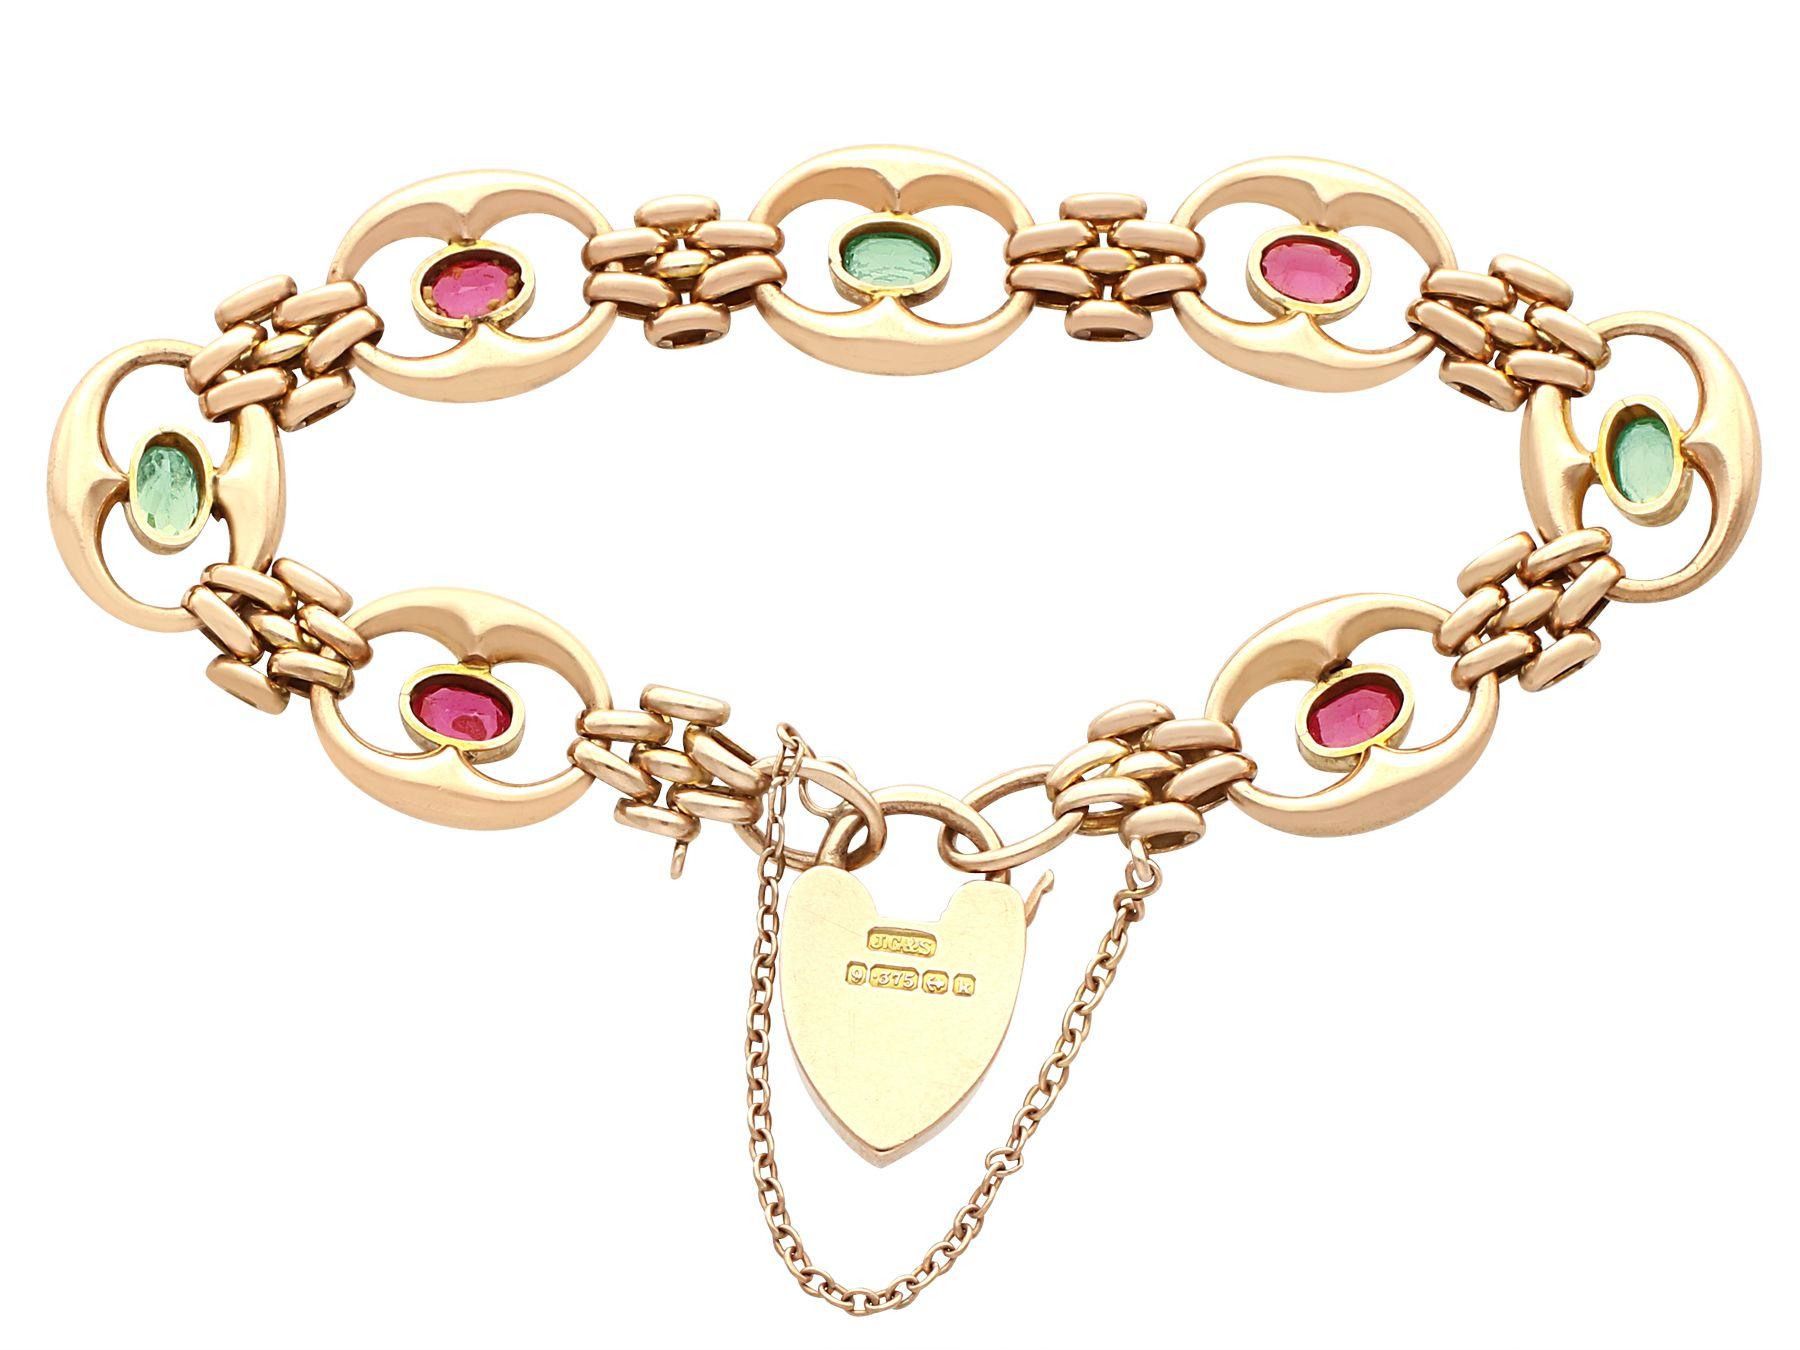 22k gold bracelets for women's